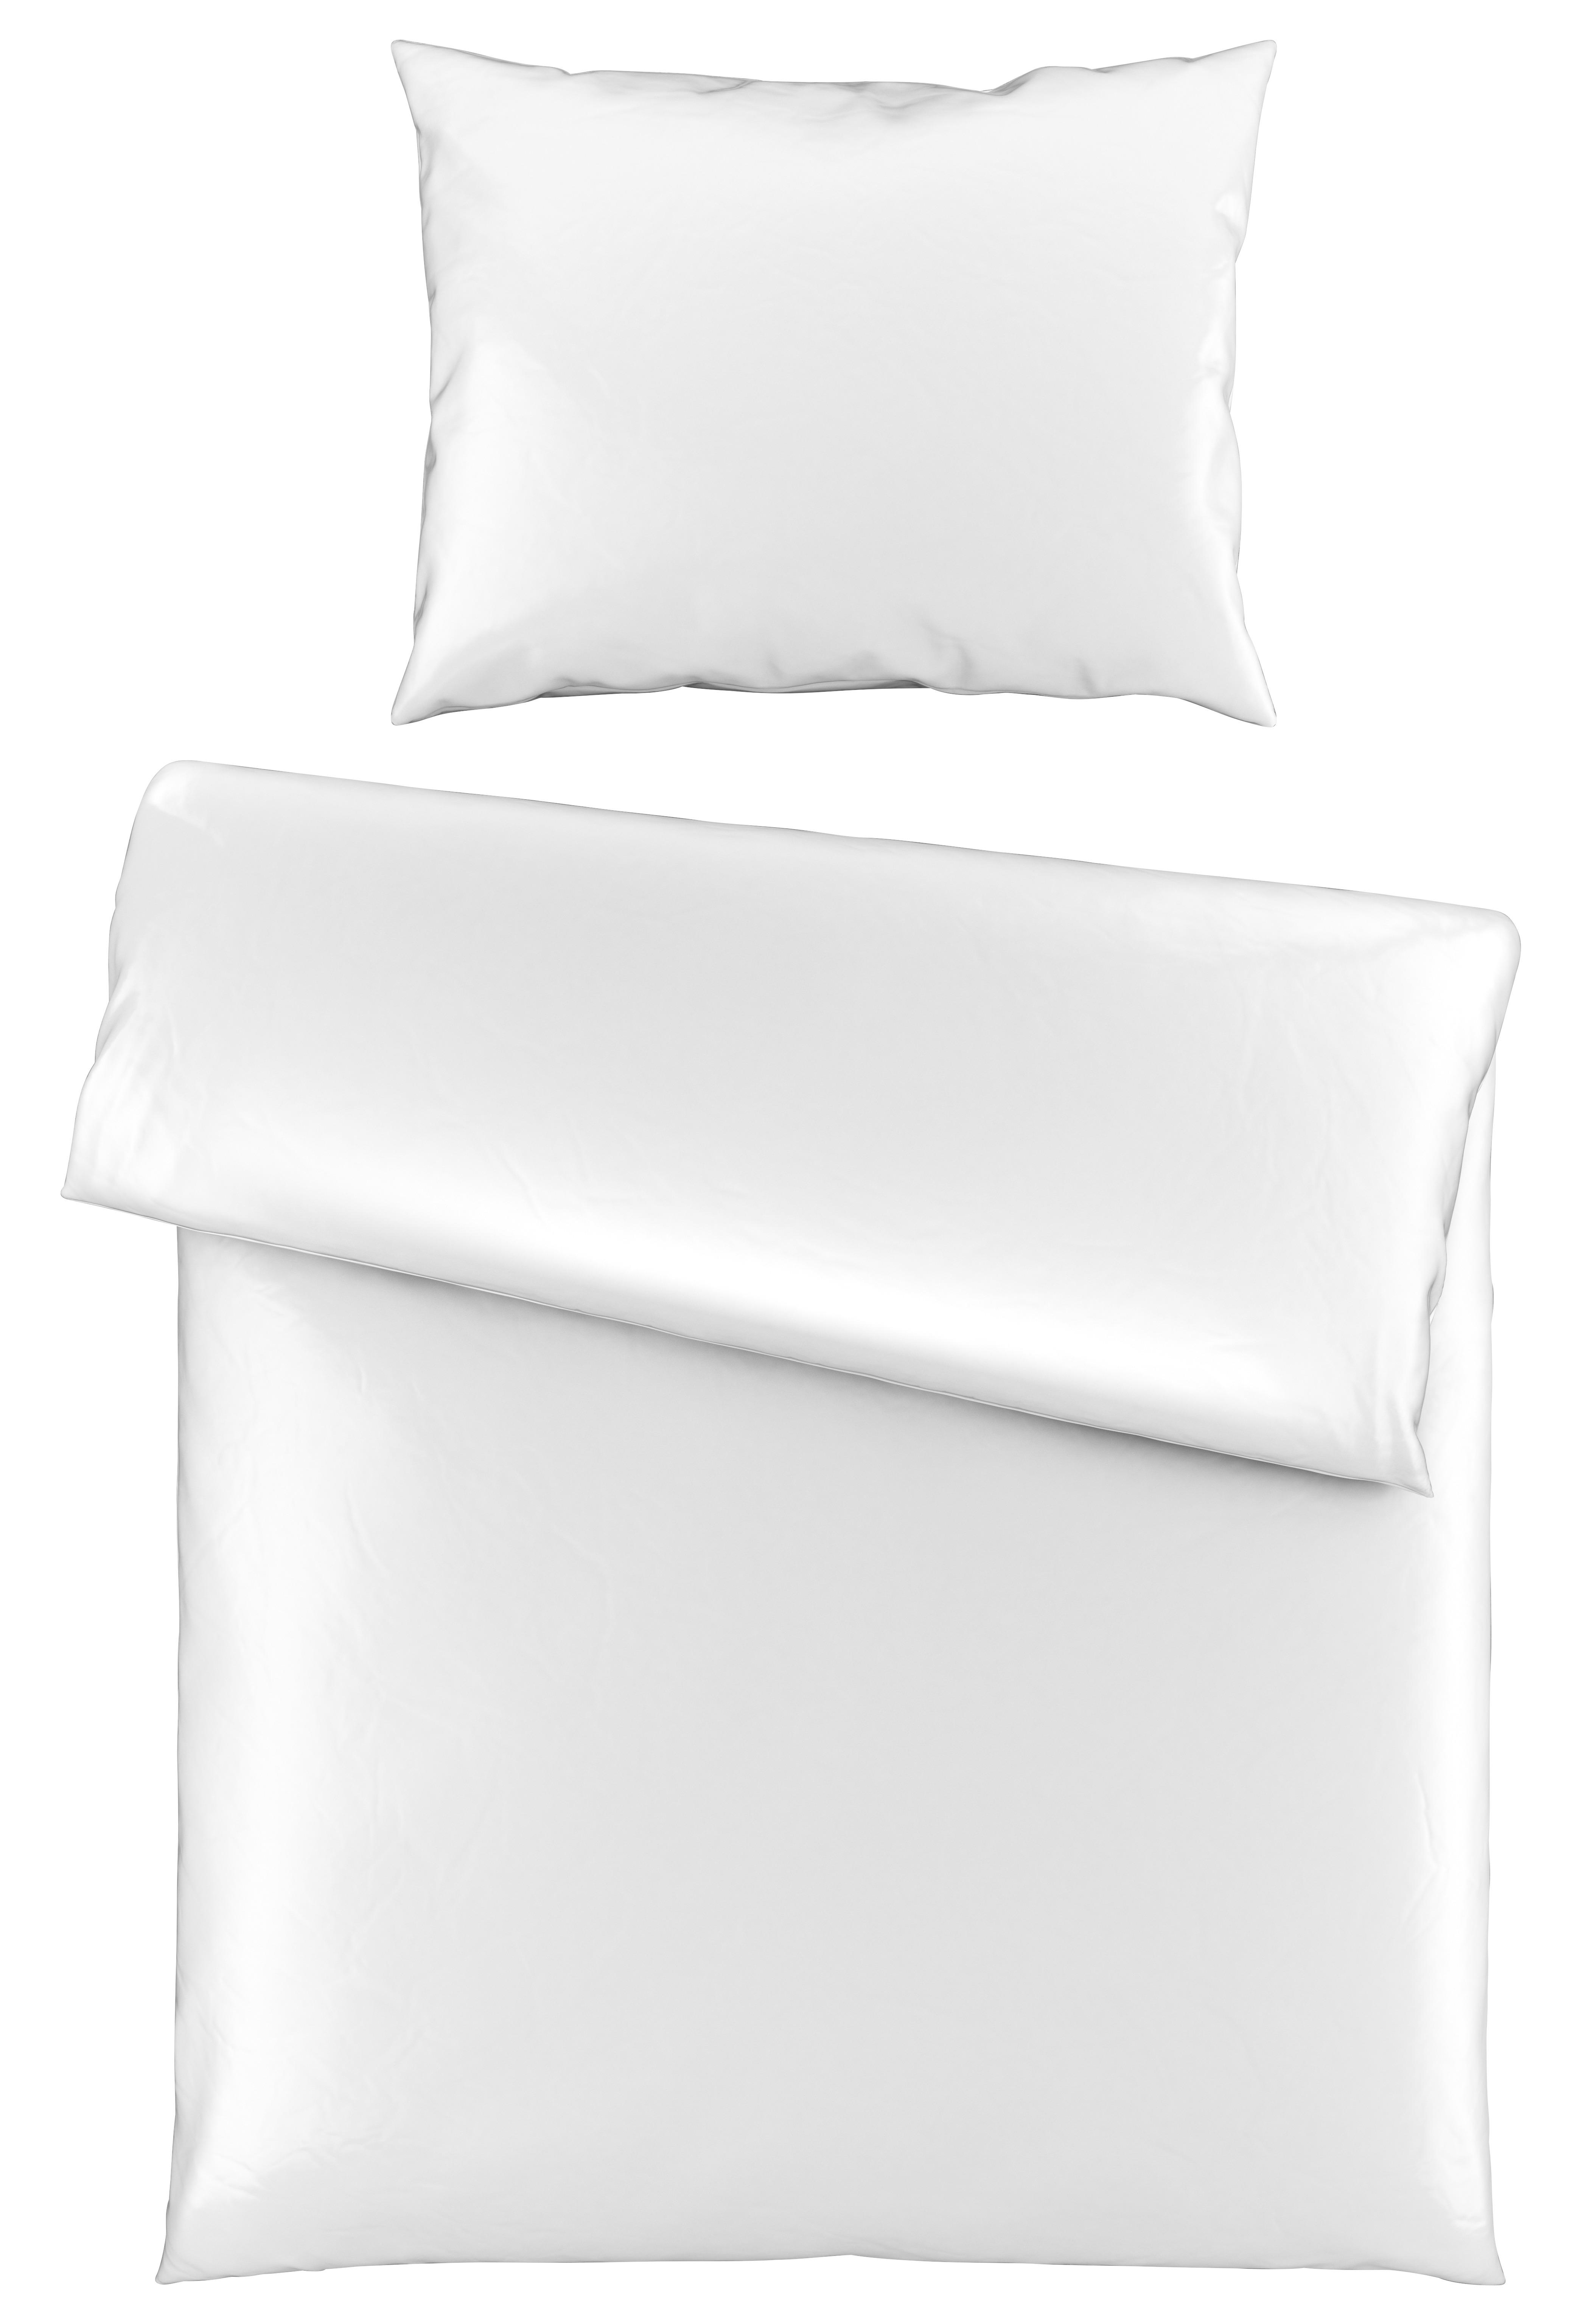 Lenjerie de pat Alex uni - alb, Modern, textil (140/200cm) - Premium Living